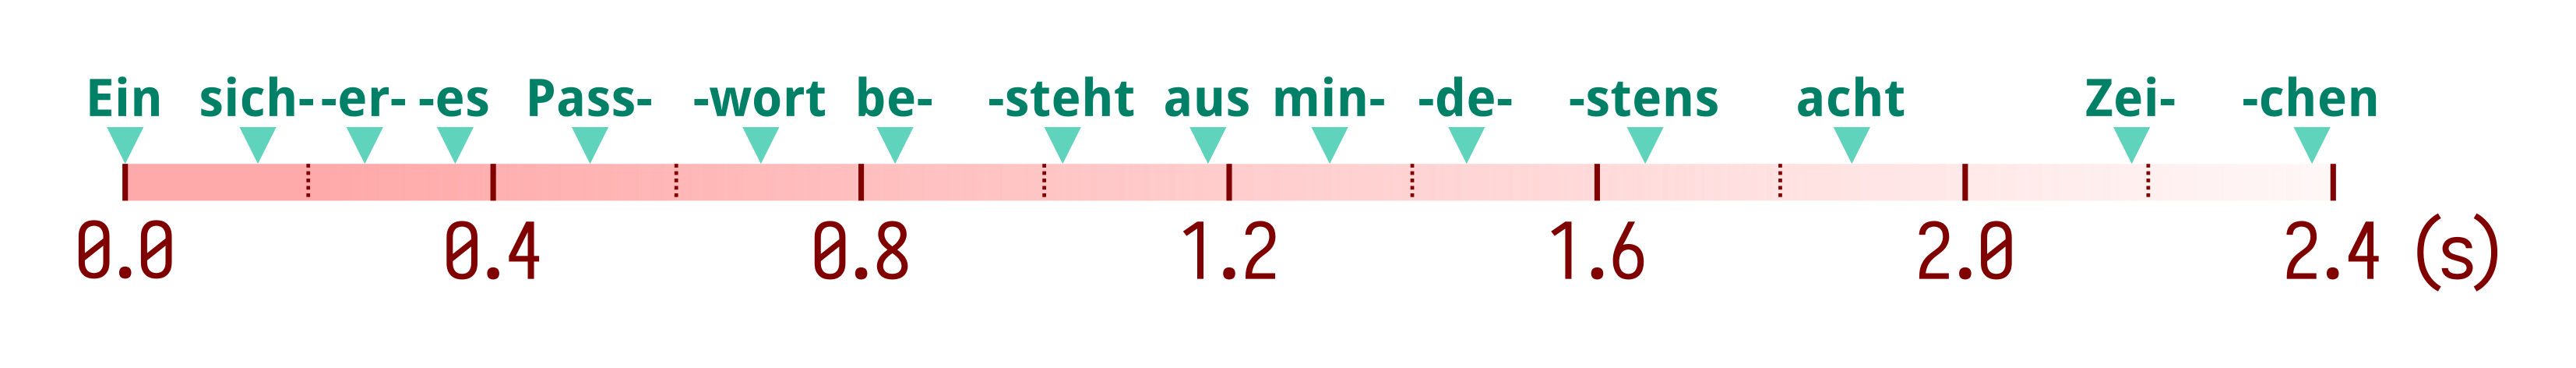 German speech timeline